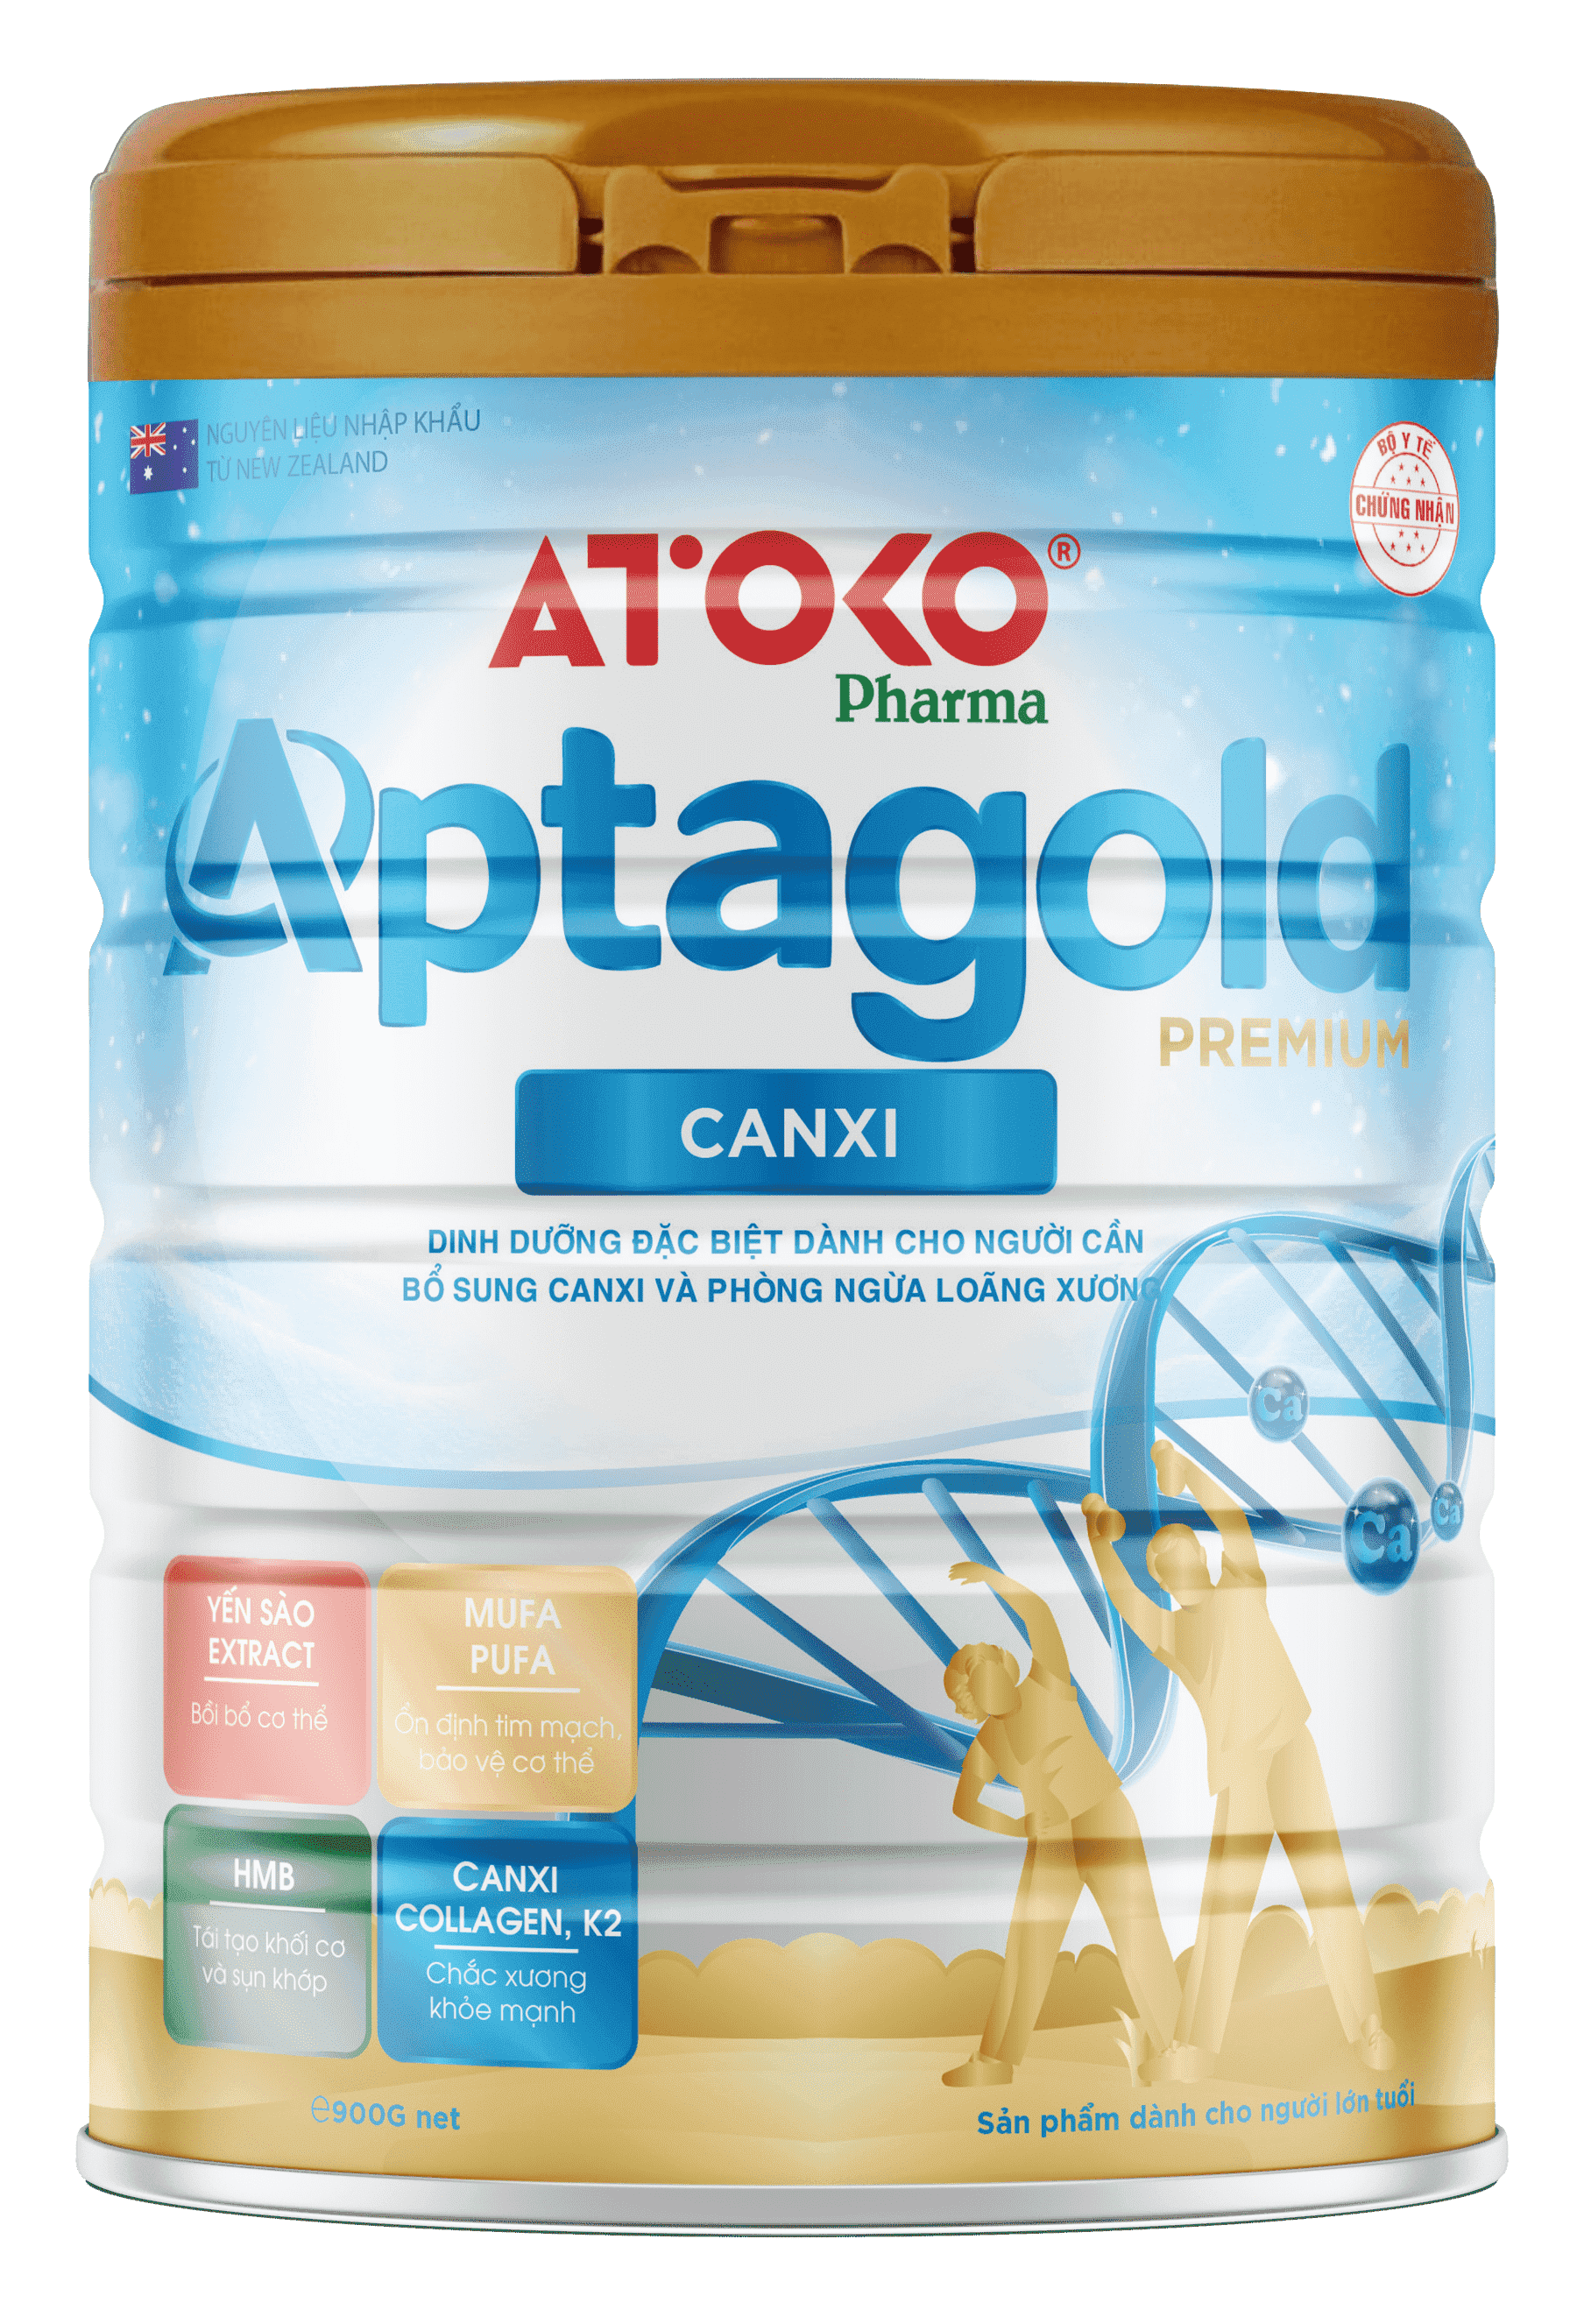 Aptagold Premium Canxi